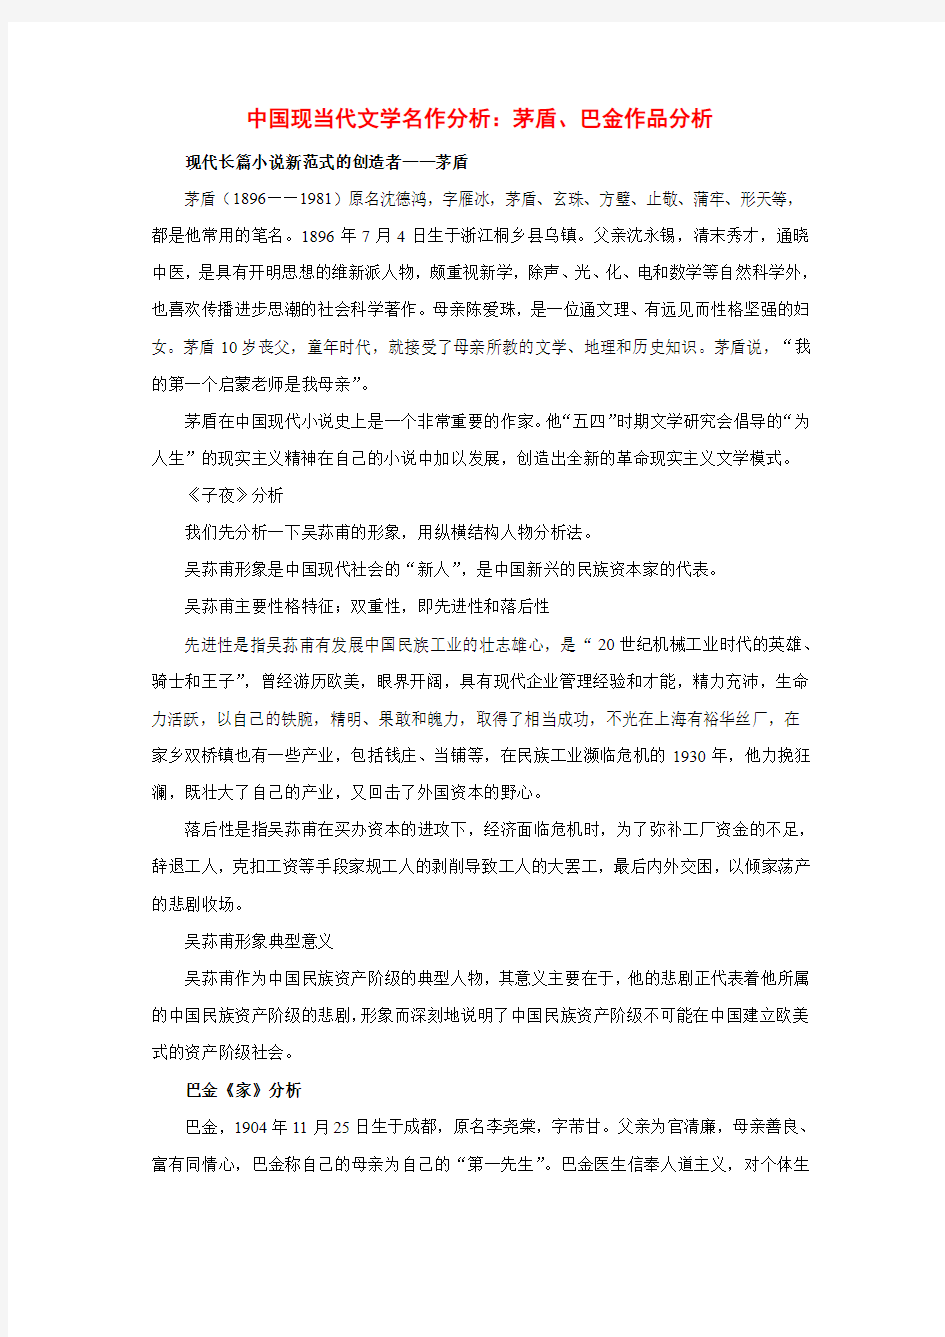 初中语文中国现当代文学名作分析茅盾、巴金作品分析